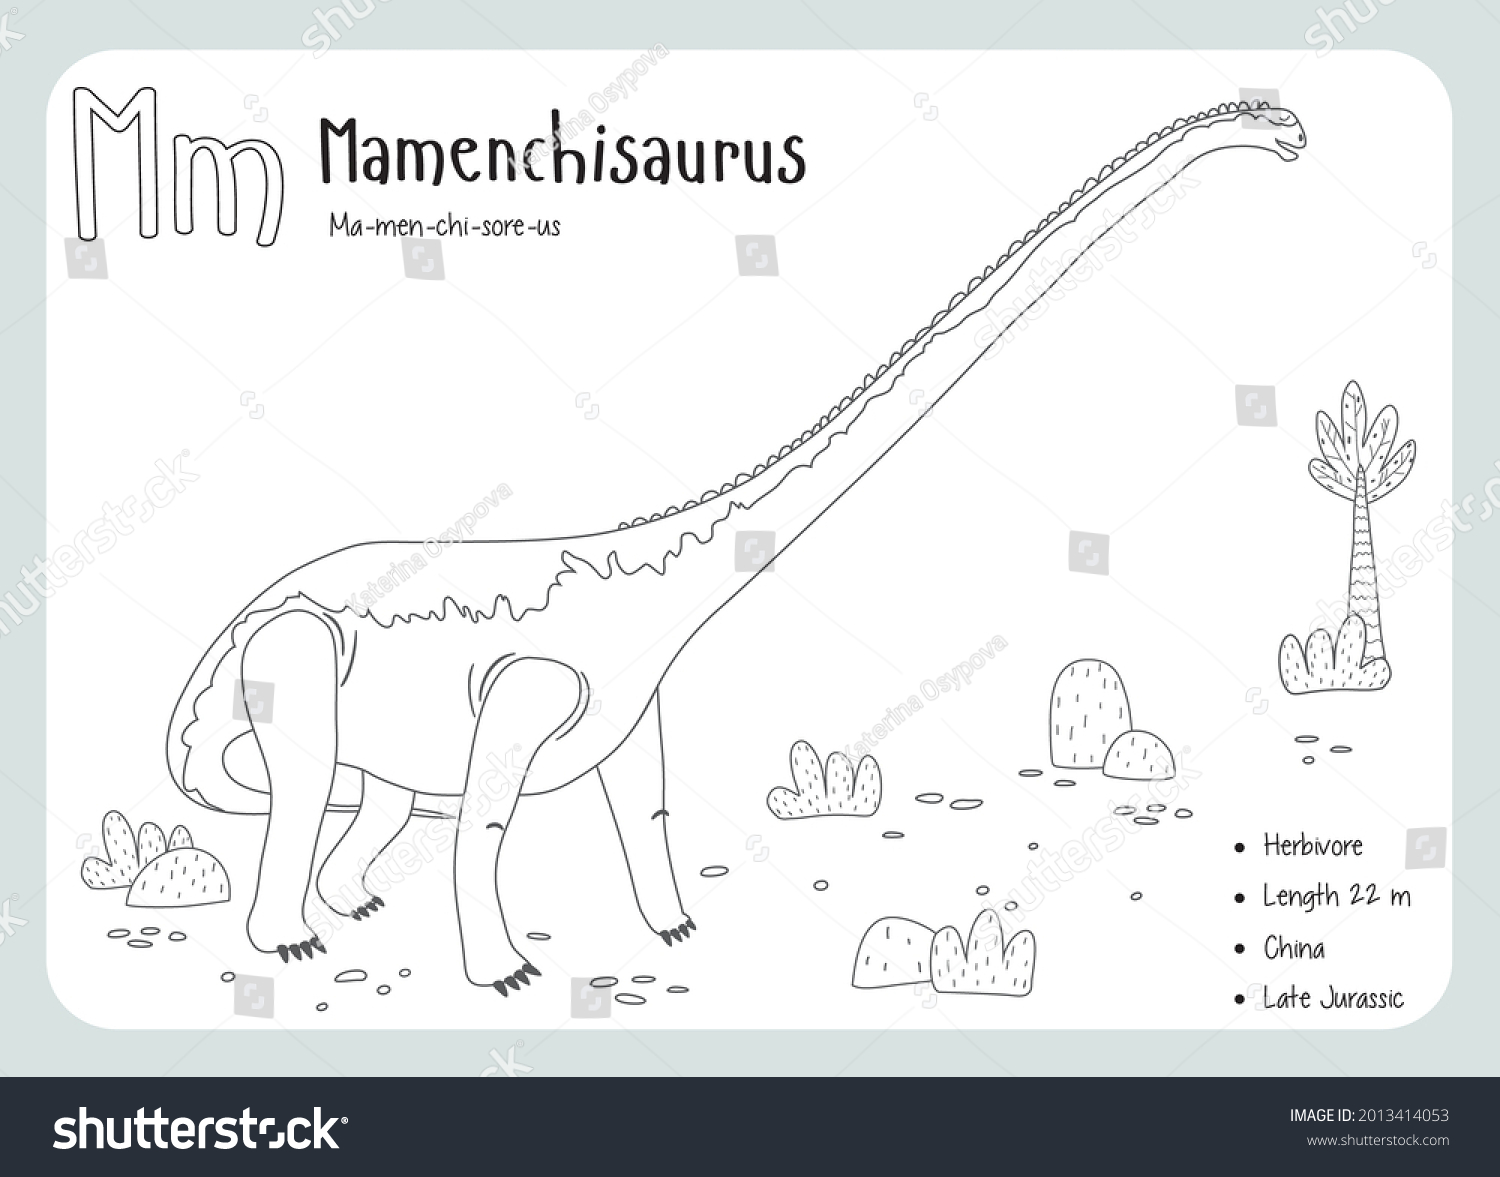 Mamenchisaurus over royalty